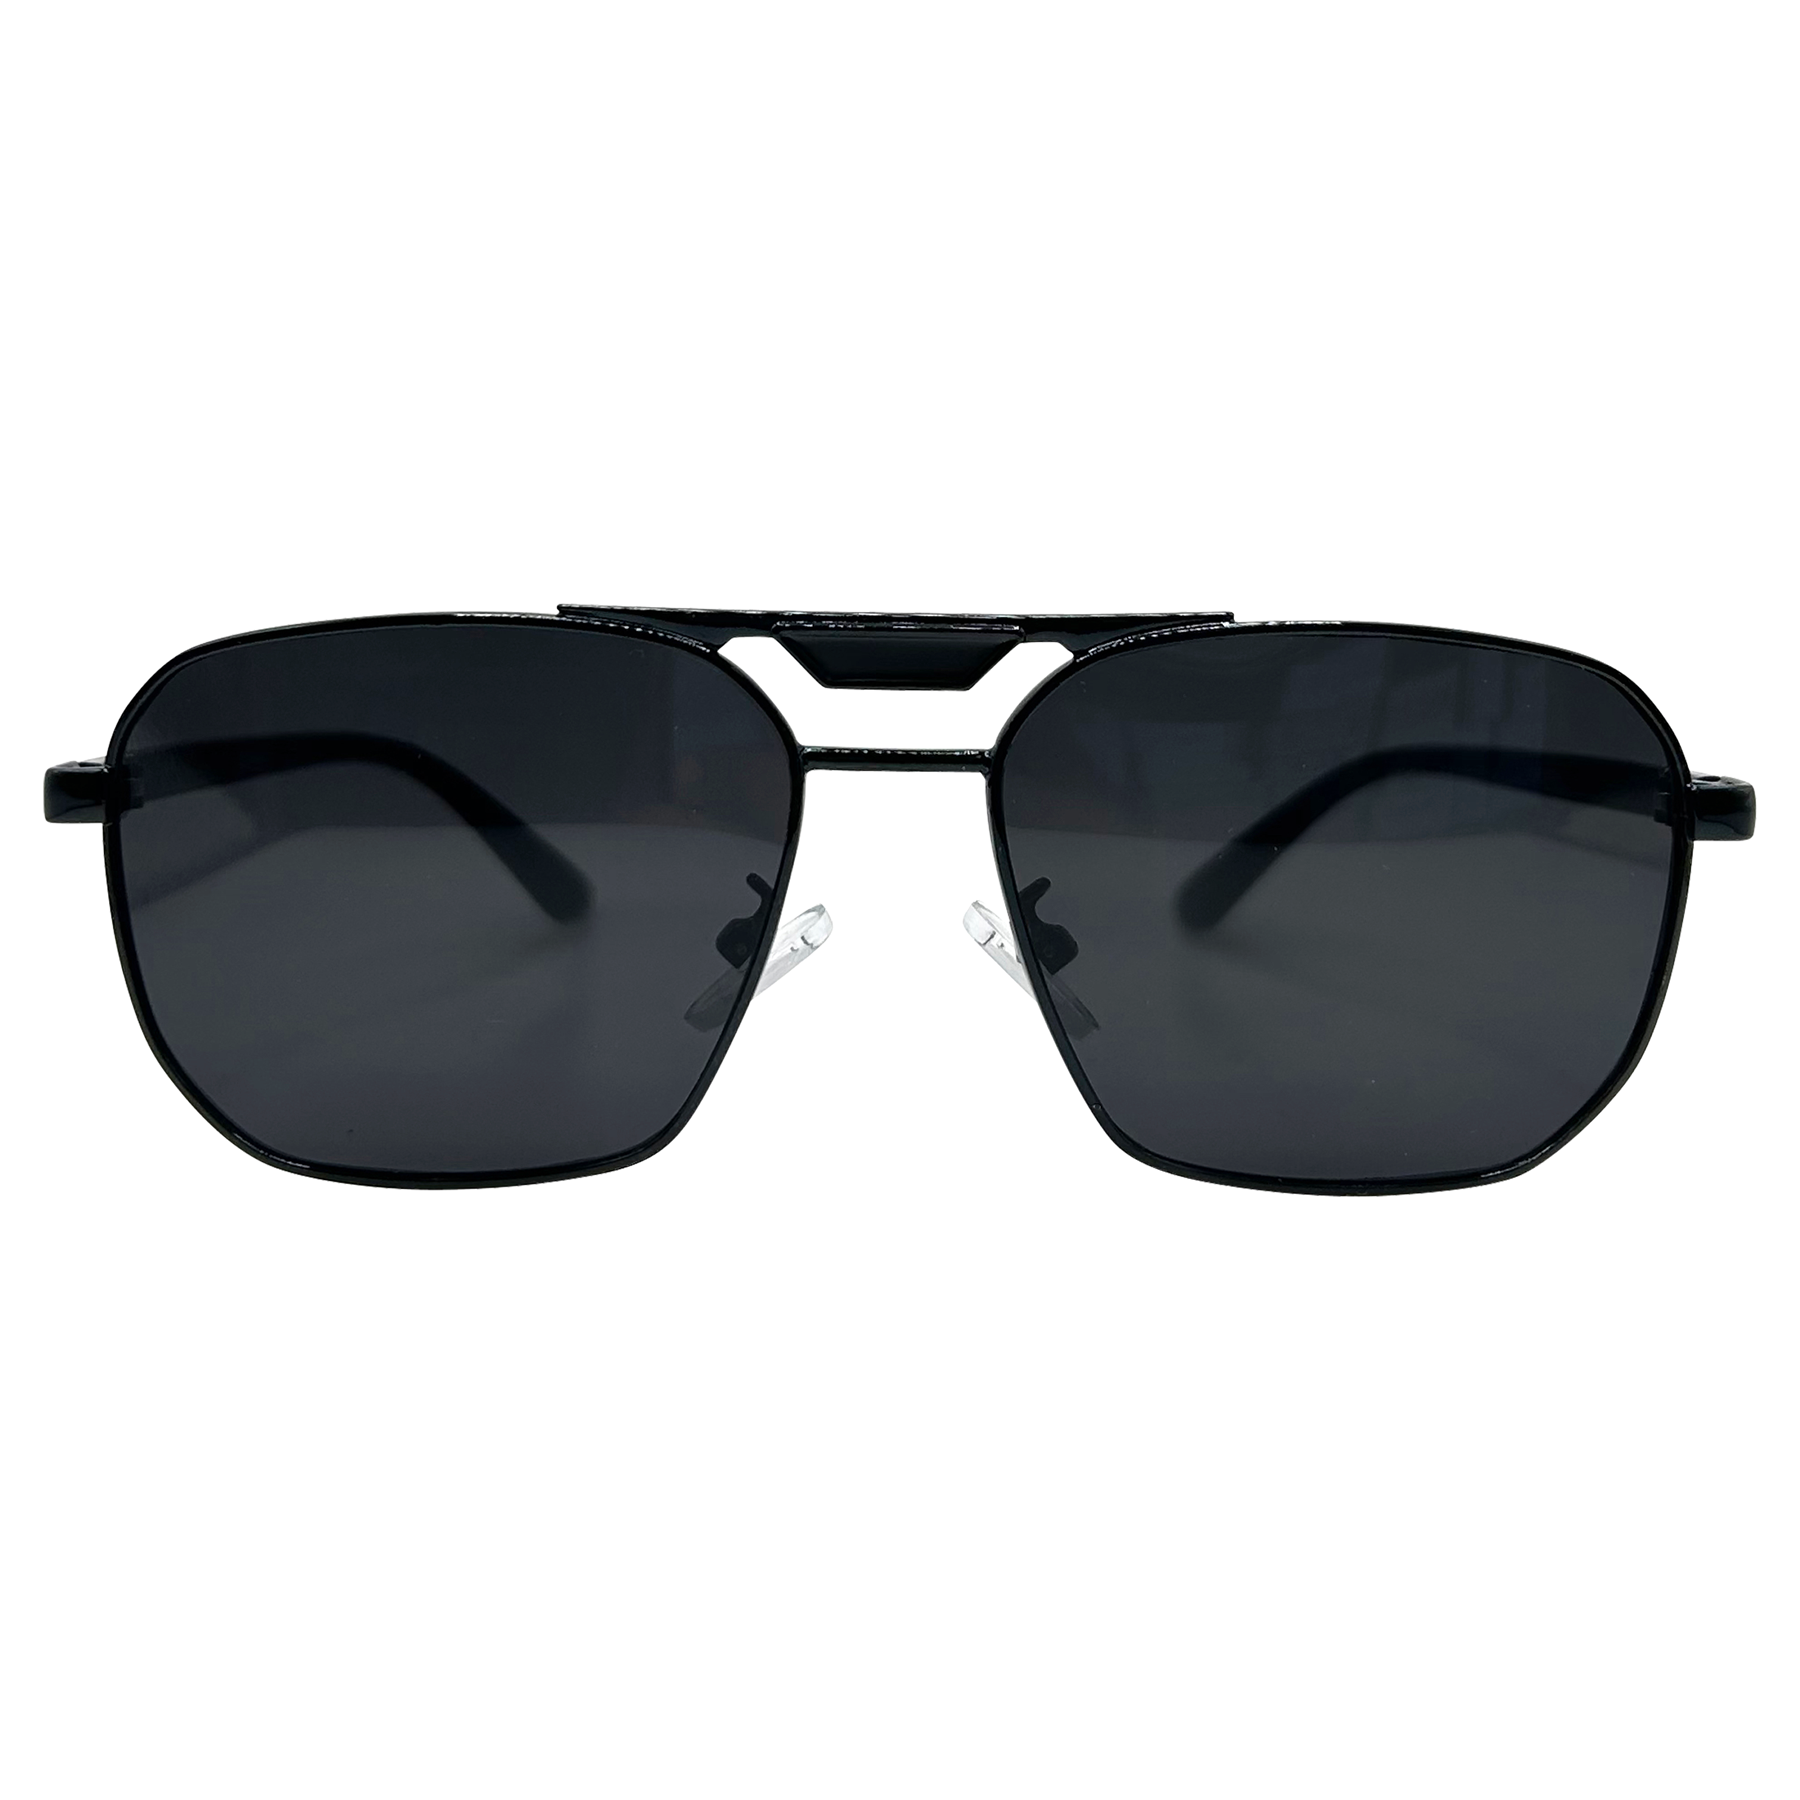 BANANA Aviator Sunglasses